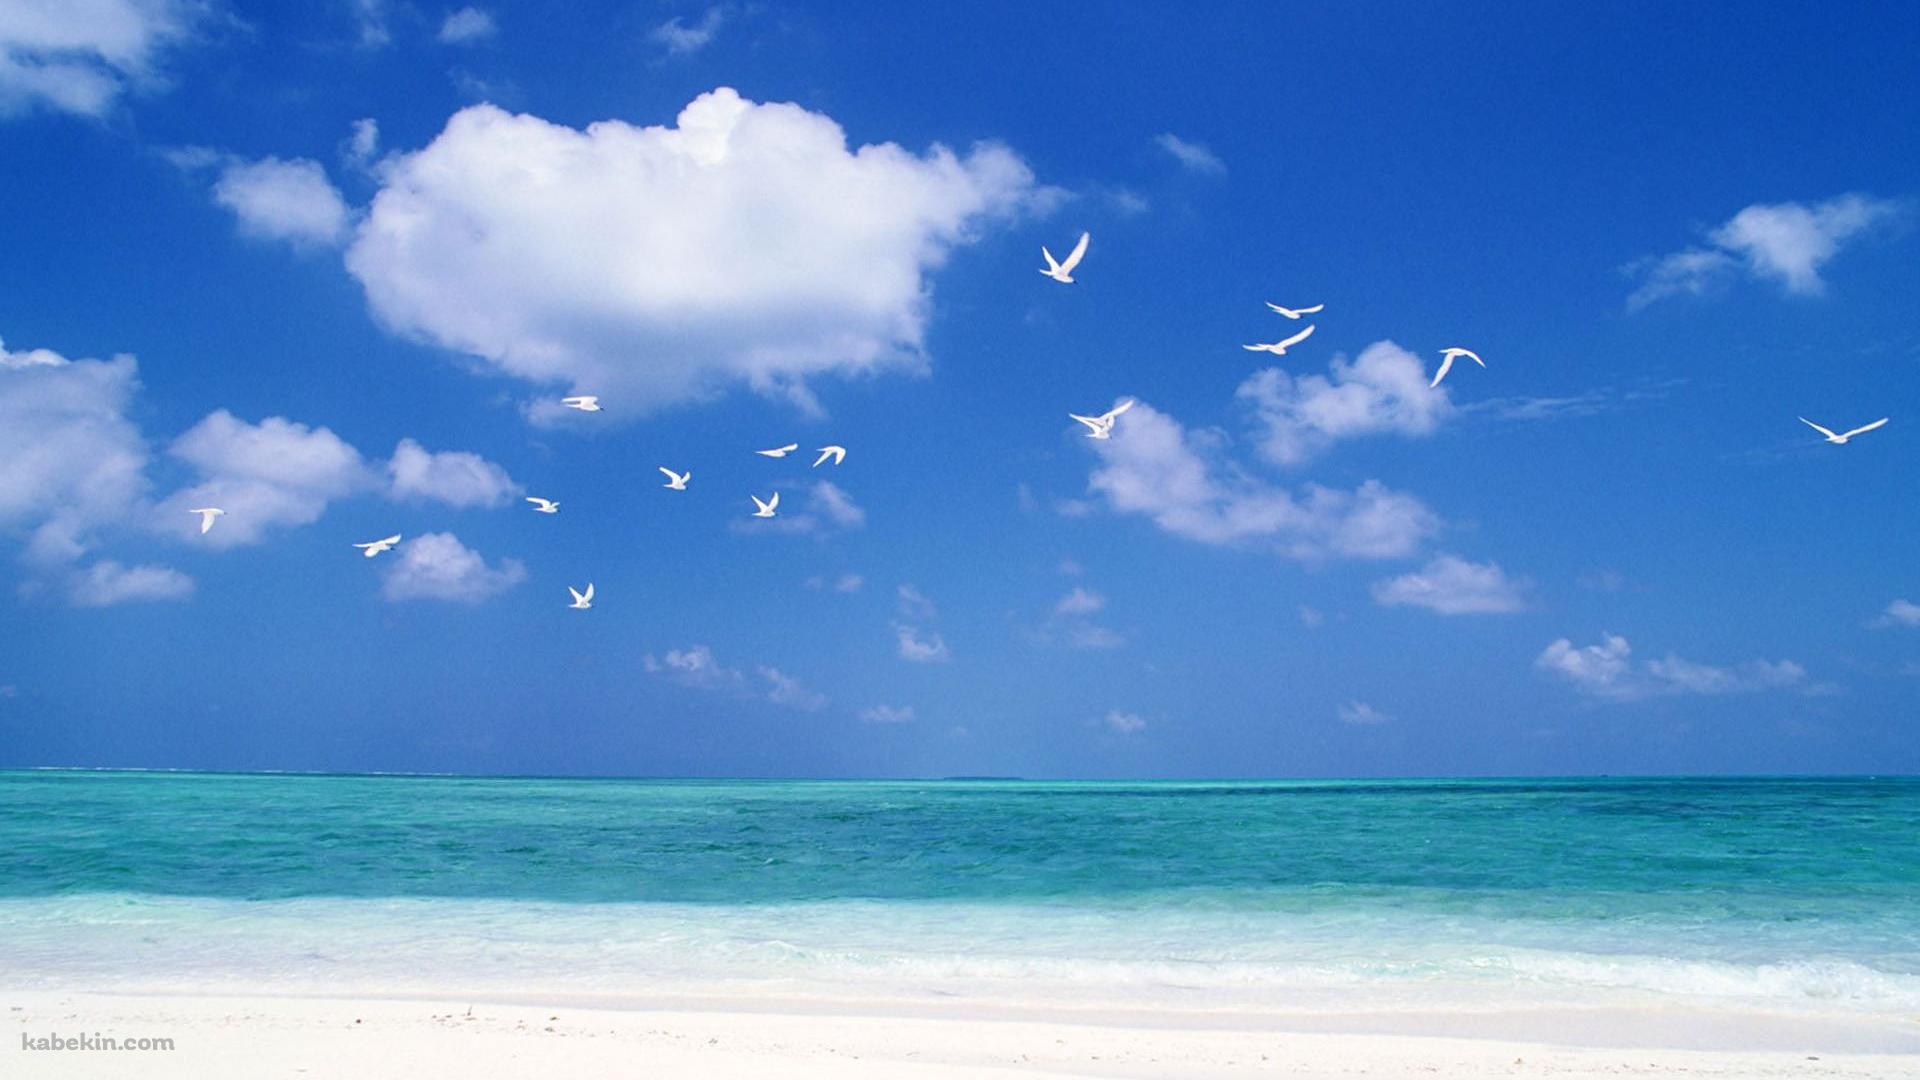 夏のビーチ 白い鳥の壁紙(1920px x 1080px) 高画質 PC・デスクトップ用